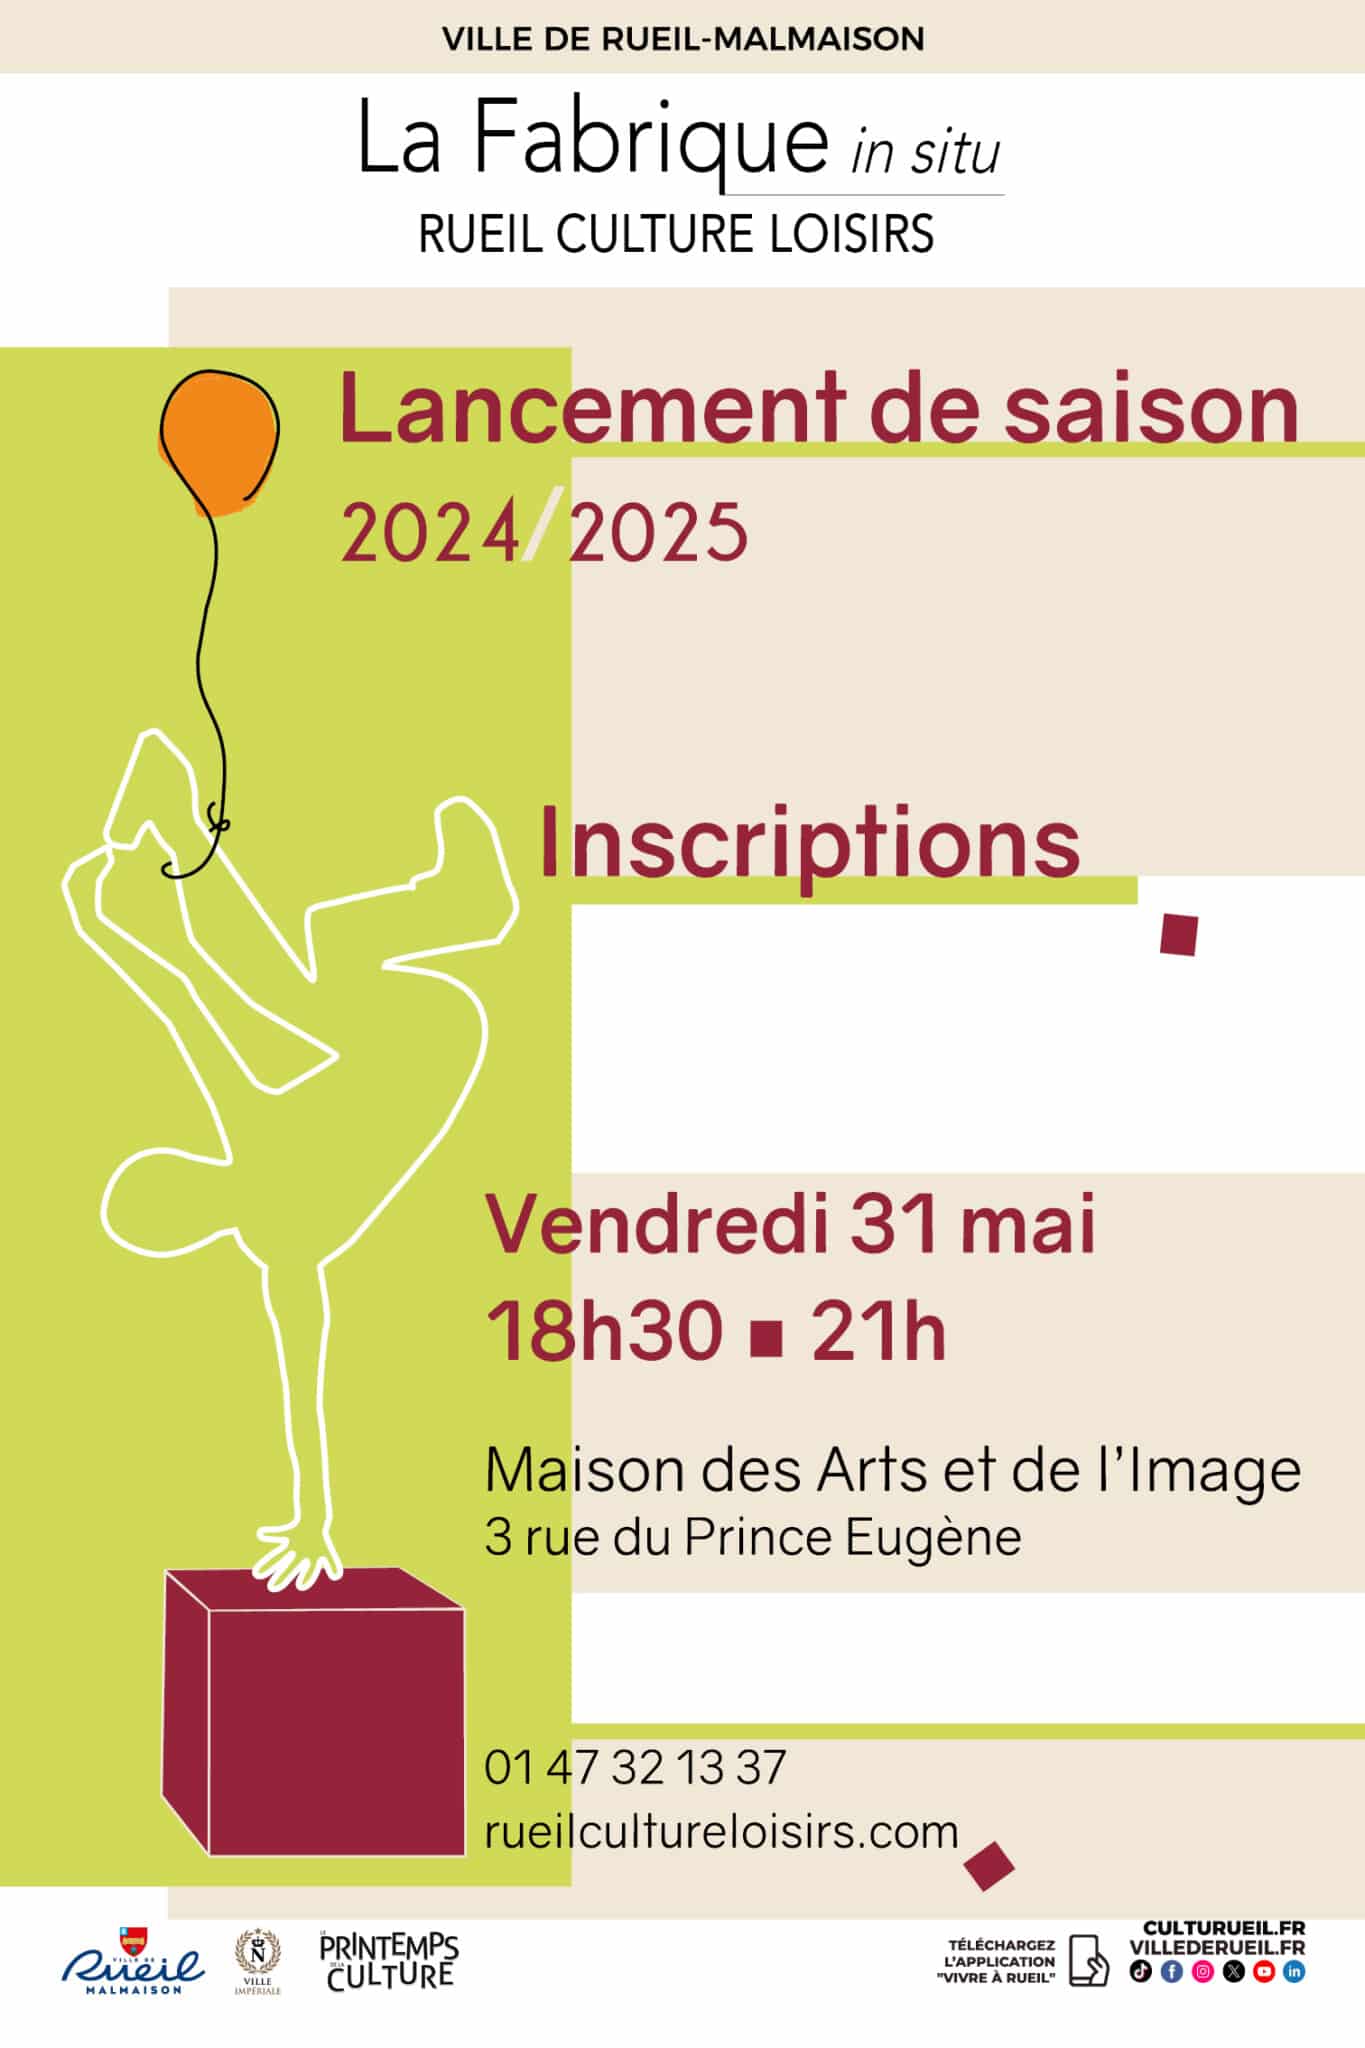 LANCEMENT DE LA SAISON 2024/2025 DE LA FABRIQUE RUEIL CULTURE LOISIRS - ouverture des inscriptions